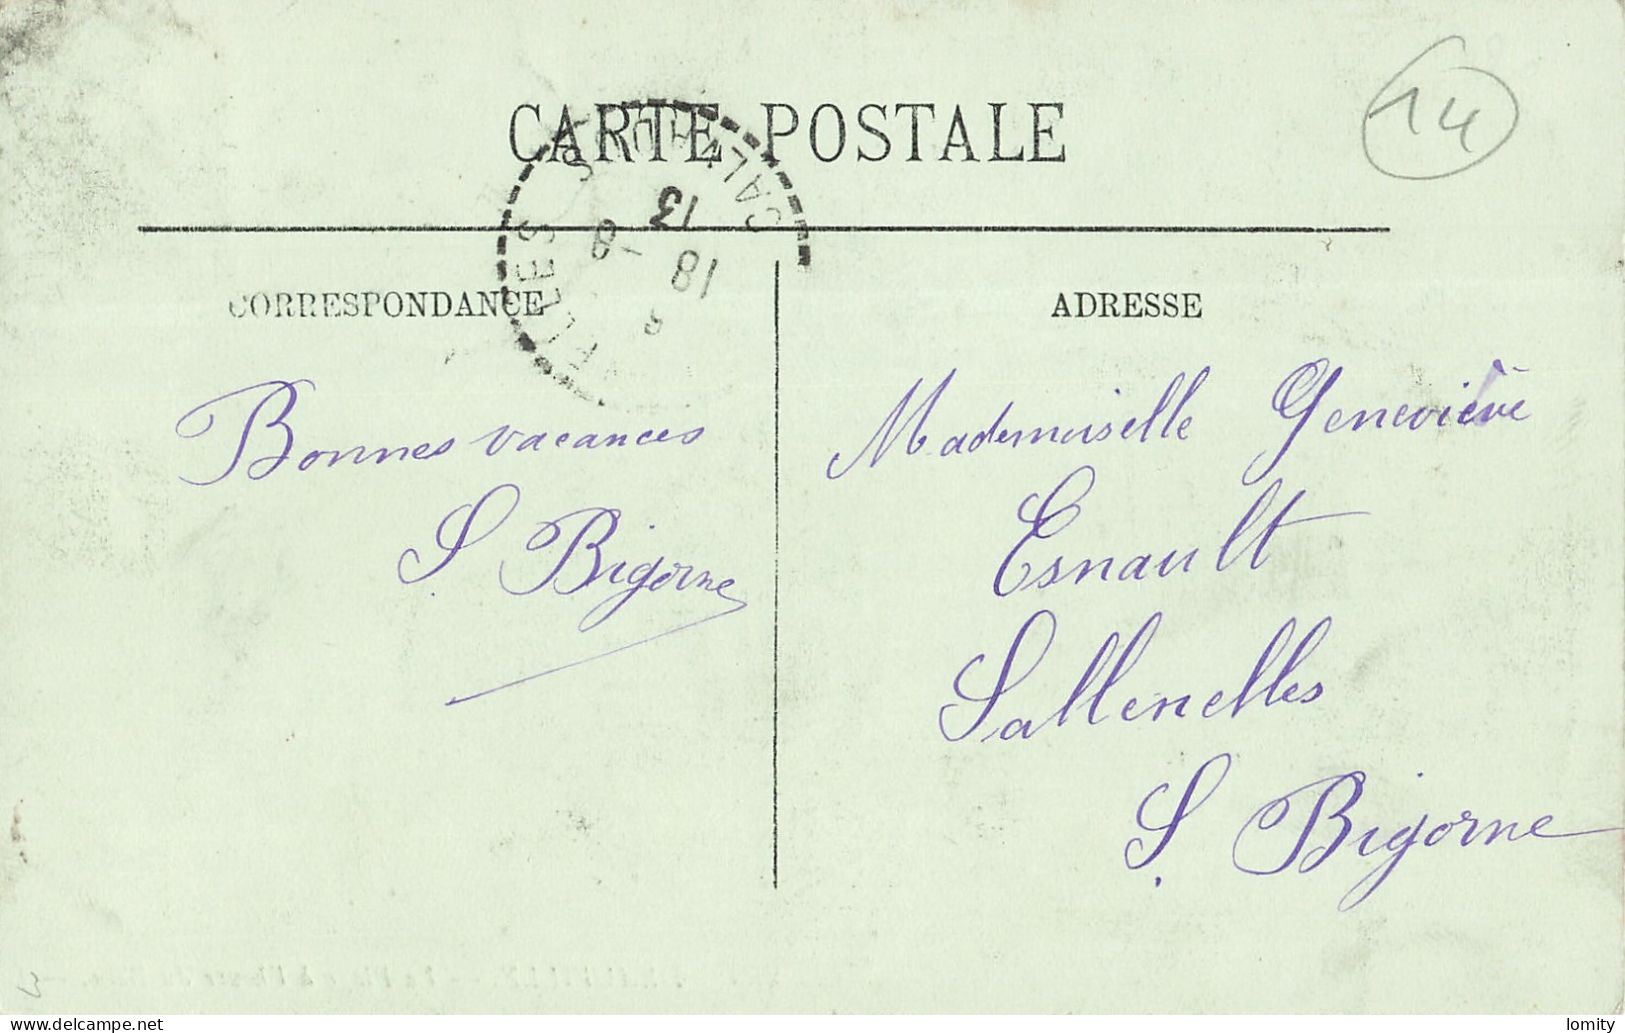 Destockage lot de 34 cartes postales CPA du Calvados Saint Aubin Trouville Deauville Houlgate Langrune sur Mer